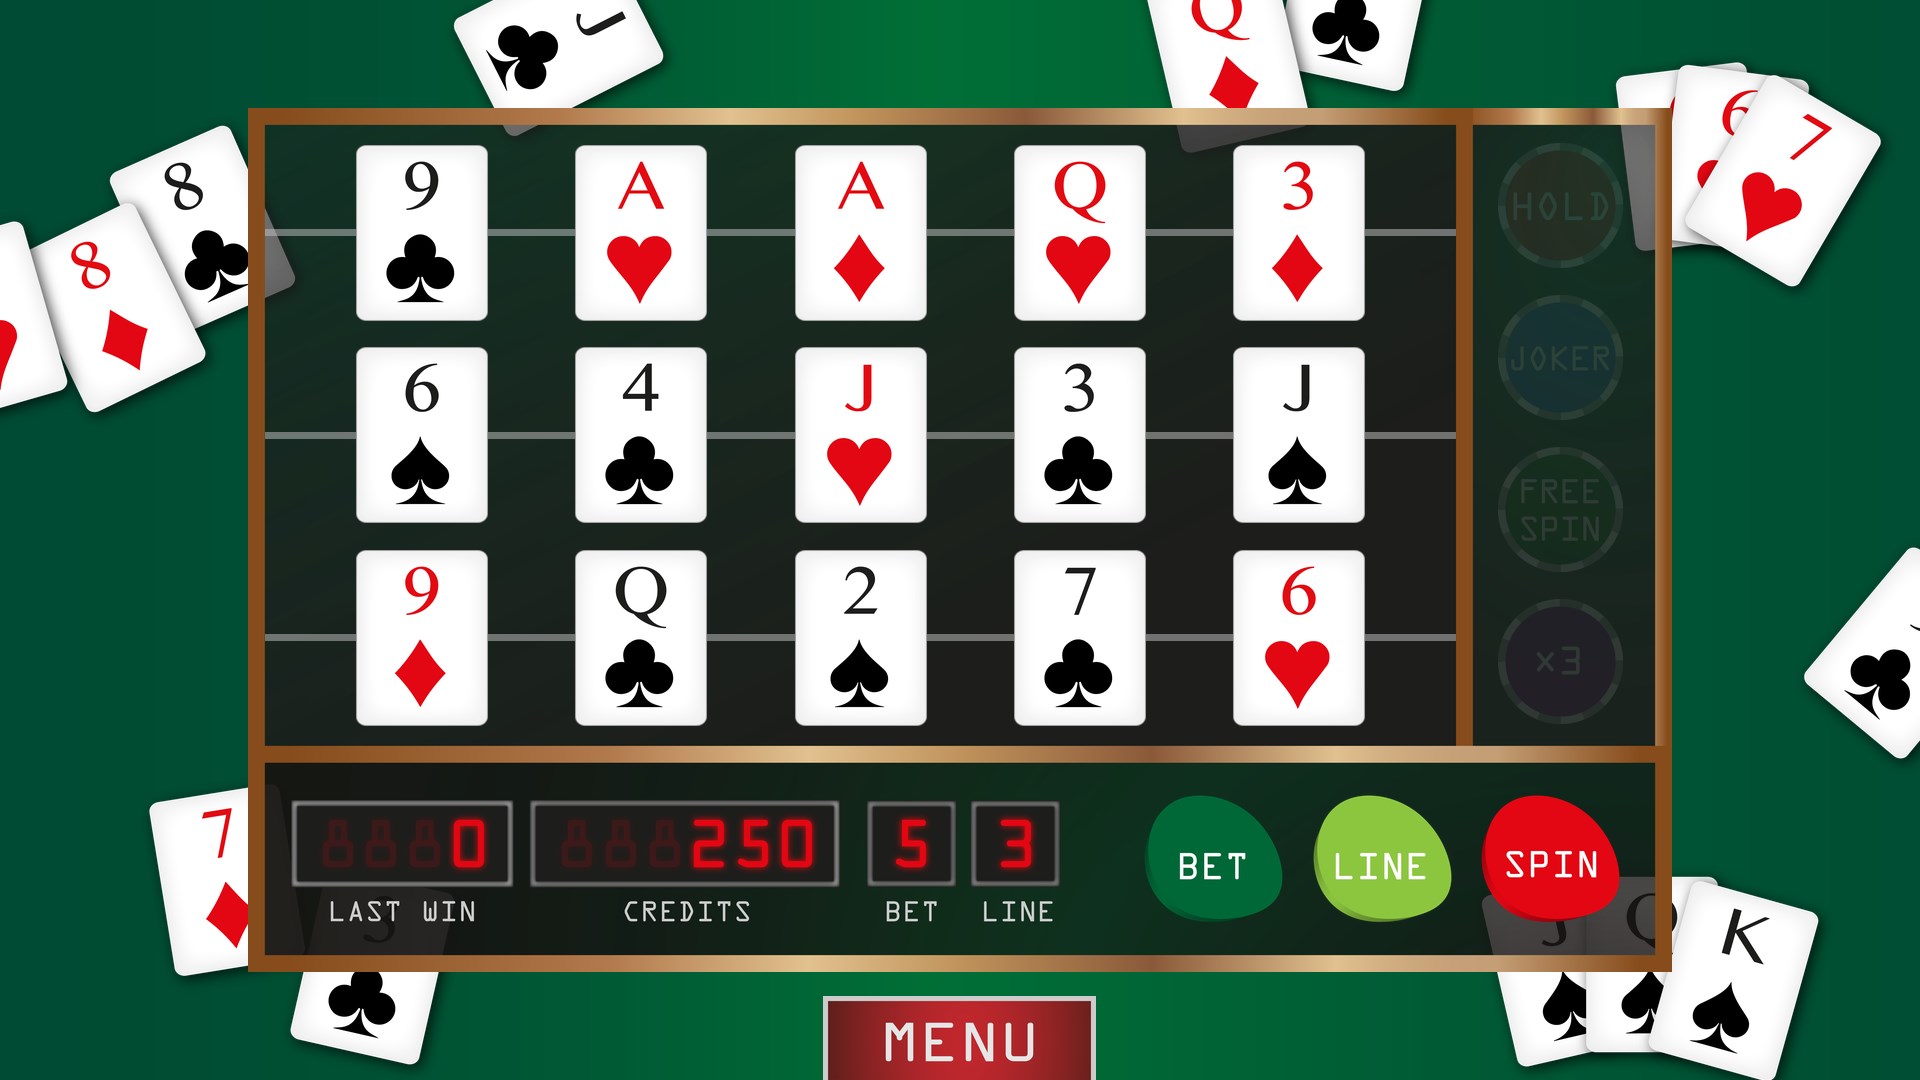 Игровой бесплатный автомат покер. Покер. Покерный игровой автомат. Игровой аппарат Покер. Игровые автоматы Покер.